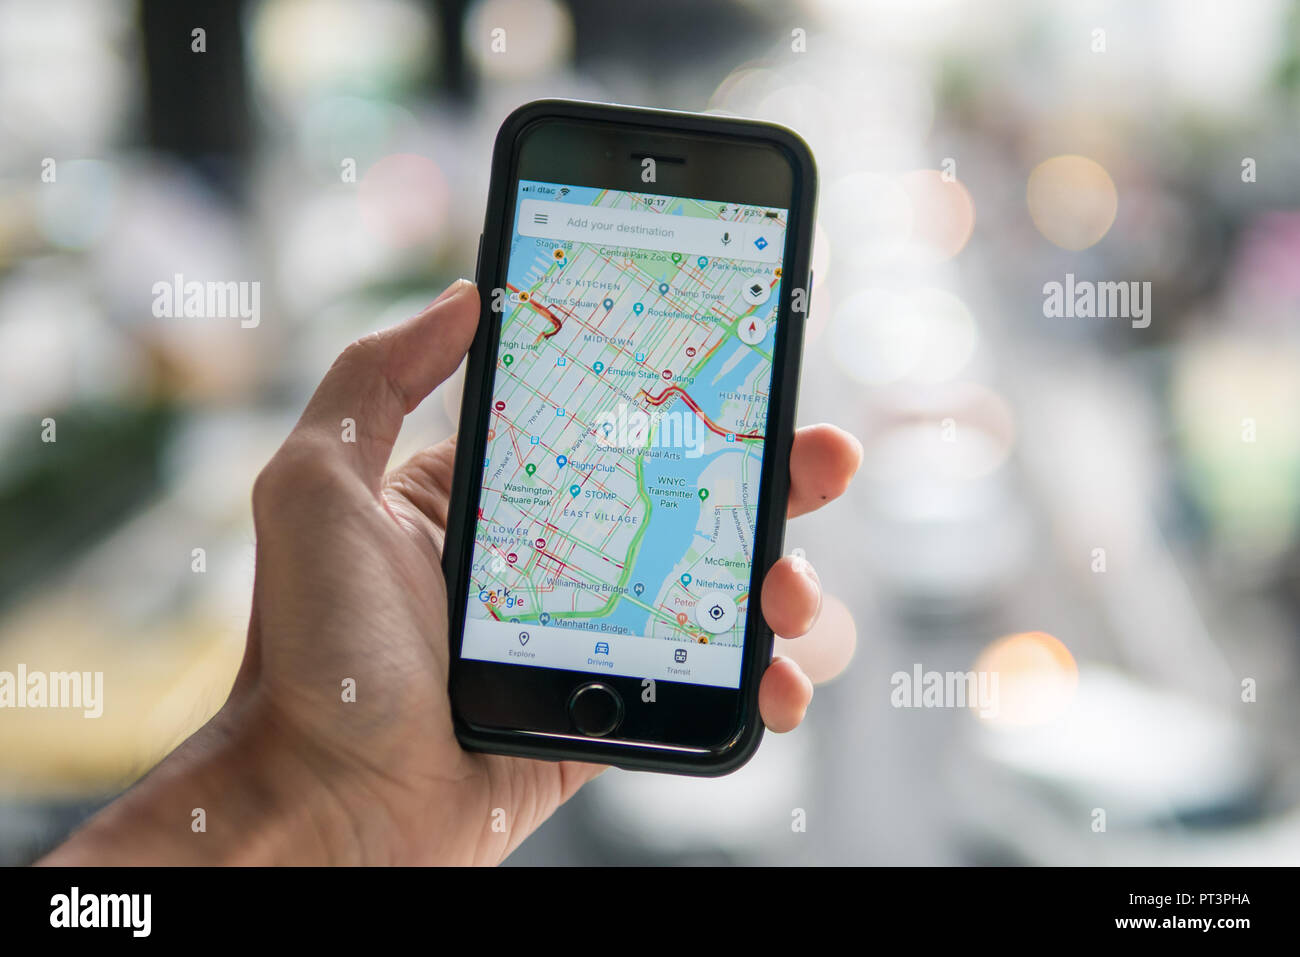 Bangkok, Thaïlande - 11 août 2018 : Apple iPhone 7 s'est tenue dans une main montrant son écran avec l'application Google maps. Banque D'Images